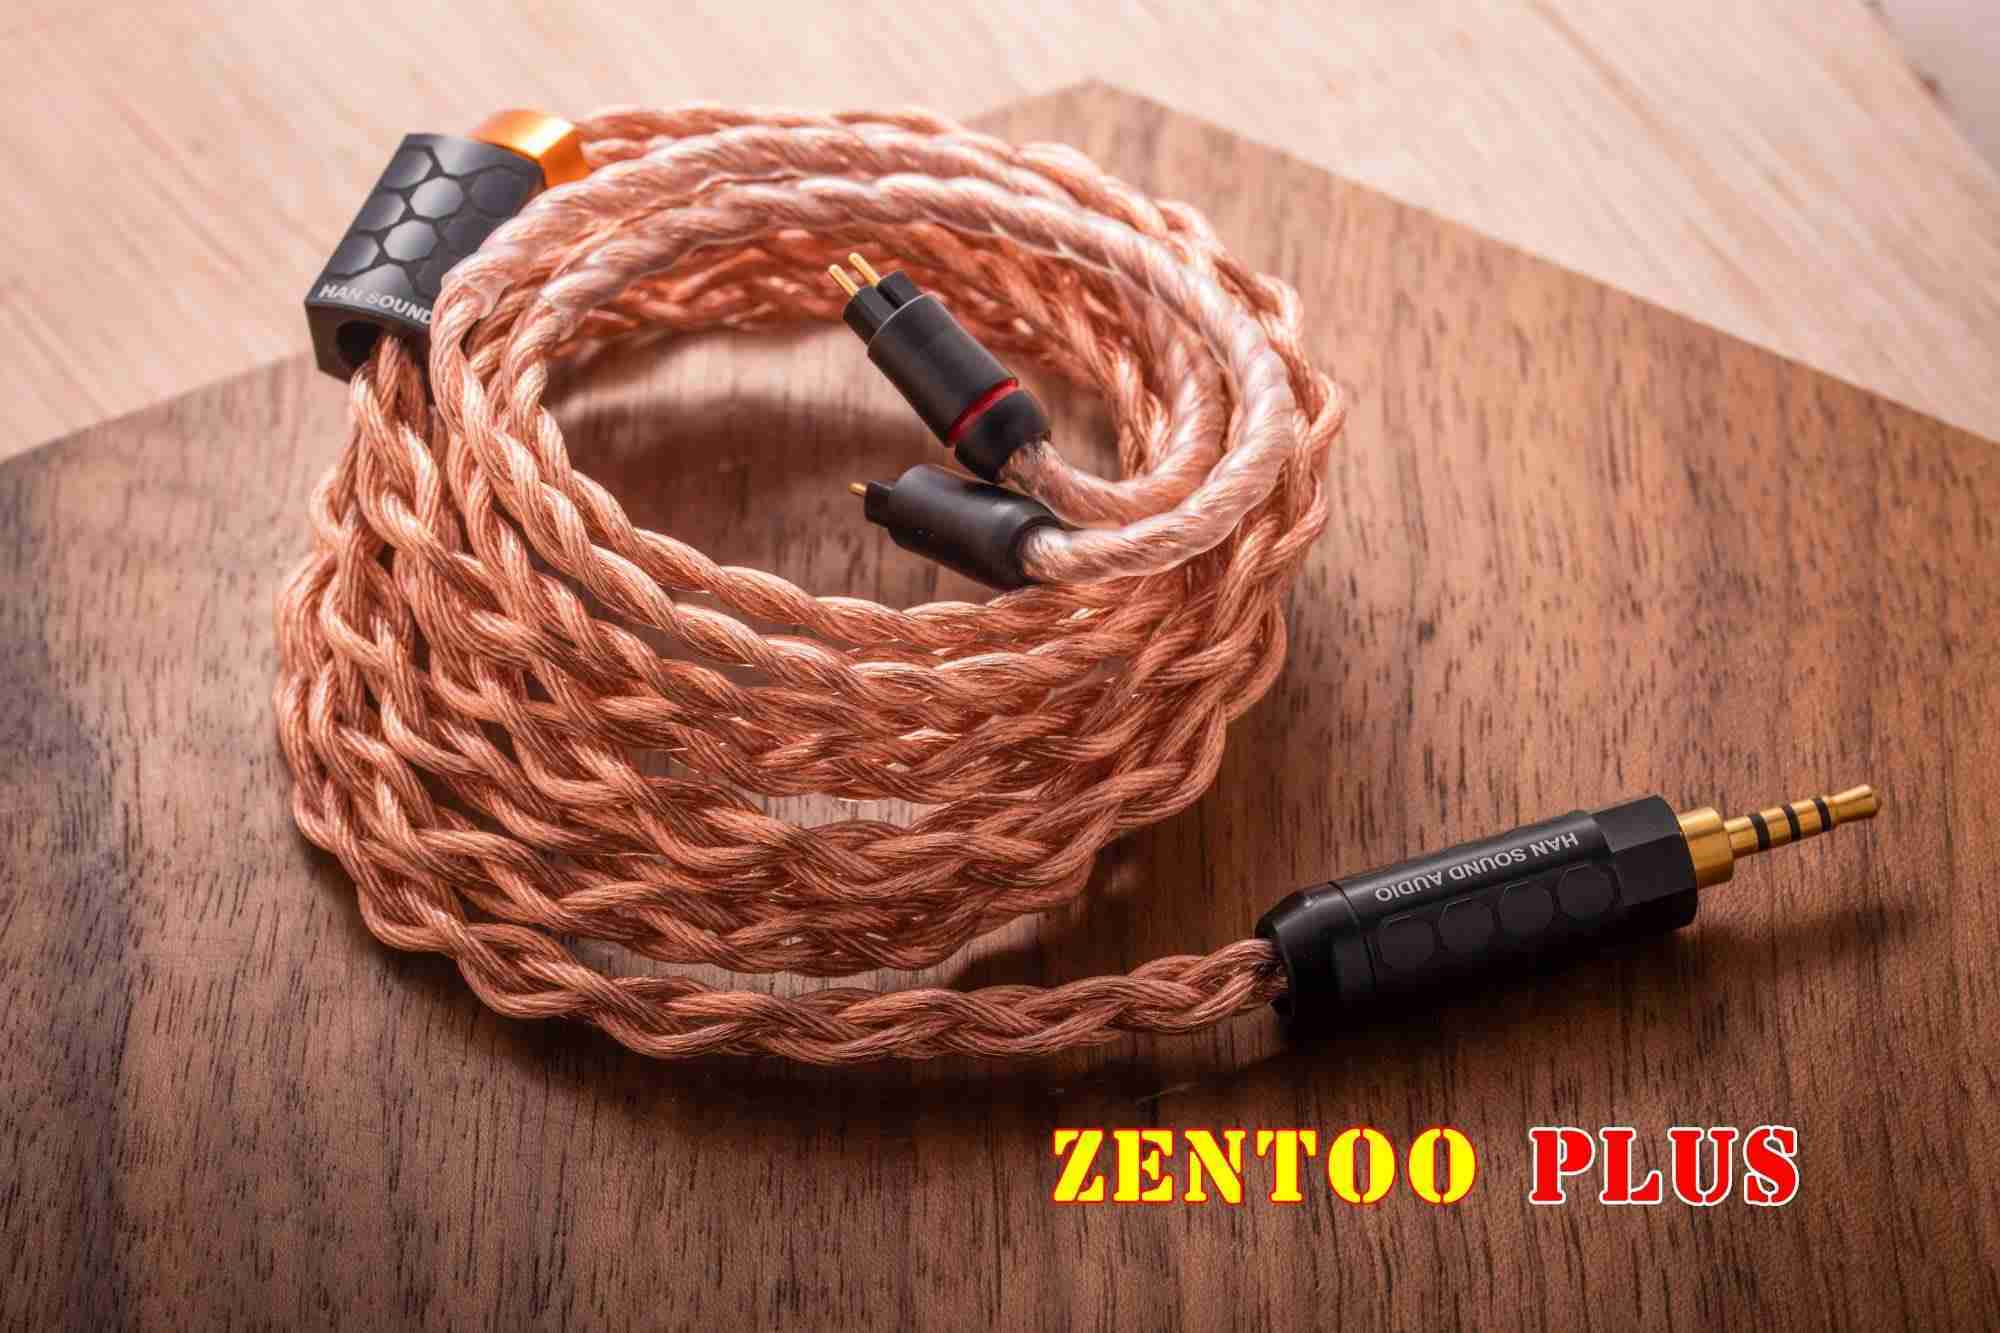 漢聲 Han Sound Zentoo Plus Zen 耳機升級線 | My Ear 耳機專門店